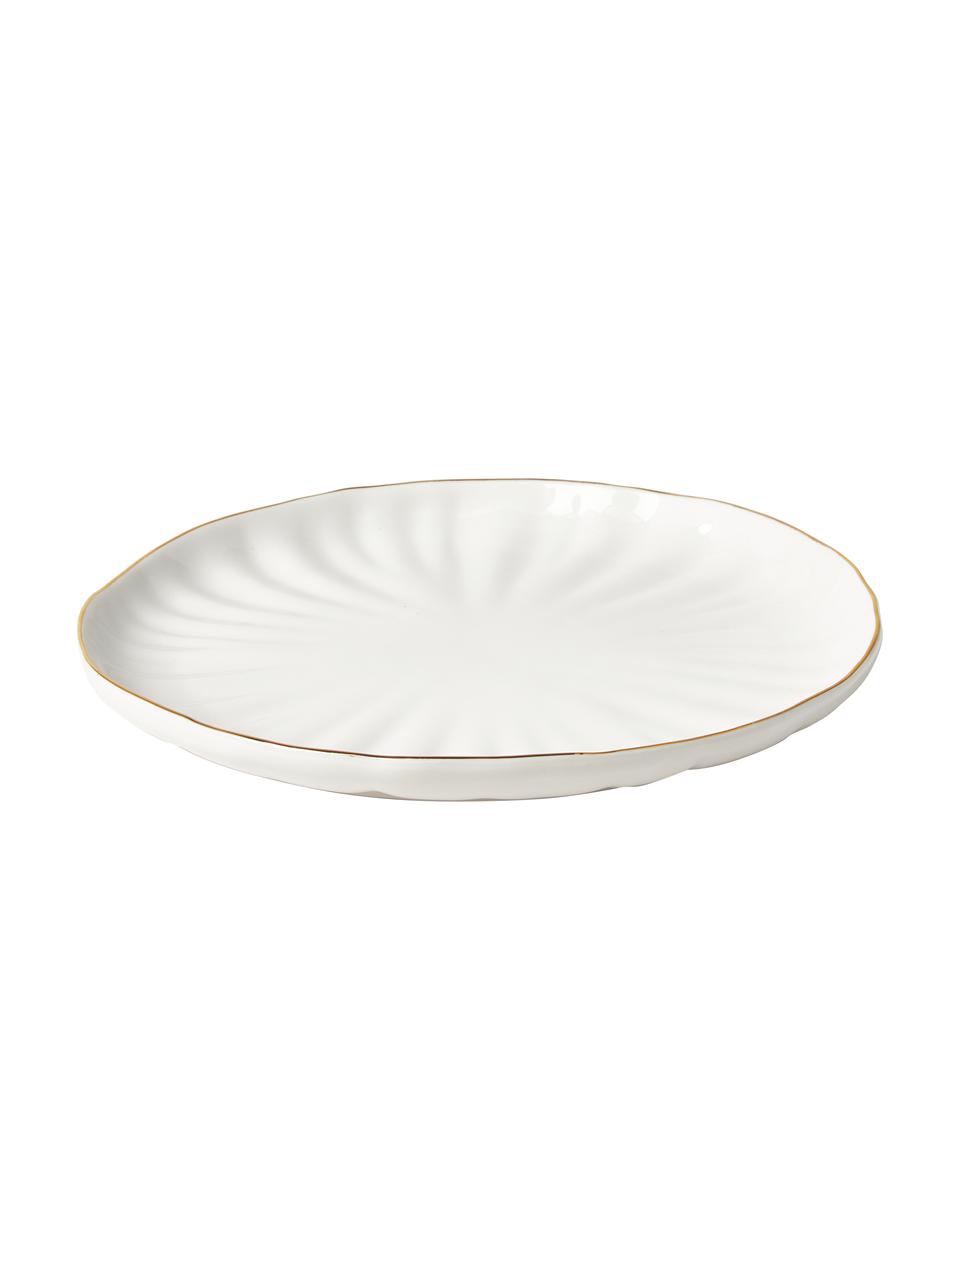 Ontbijtborden Sali van porselein met goudkleurige rand en reliëf, 2 stuks, Porselein, Wit, Ø 22 cm